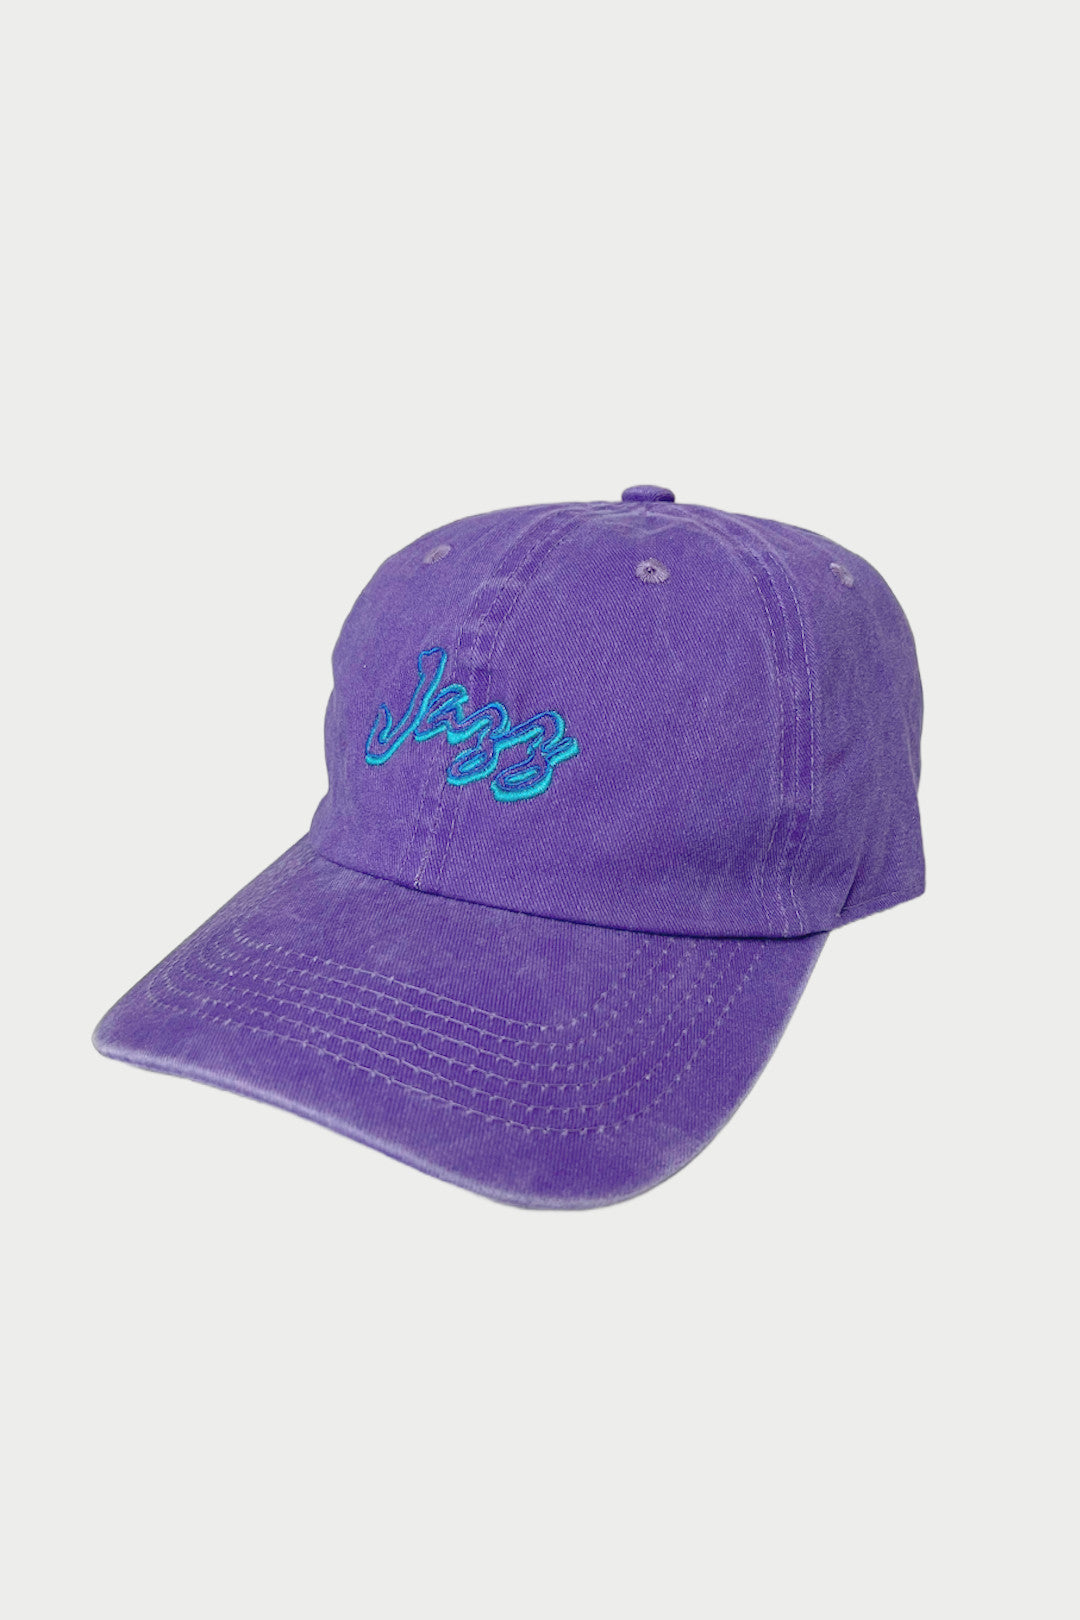 Jazz Wave Hat - Purple